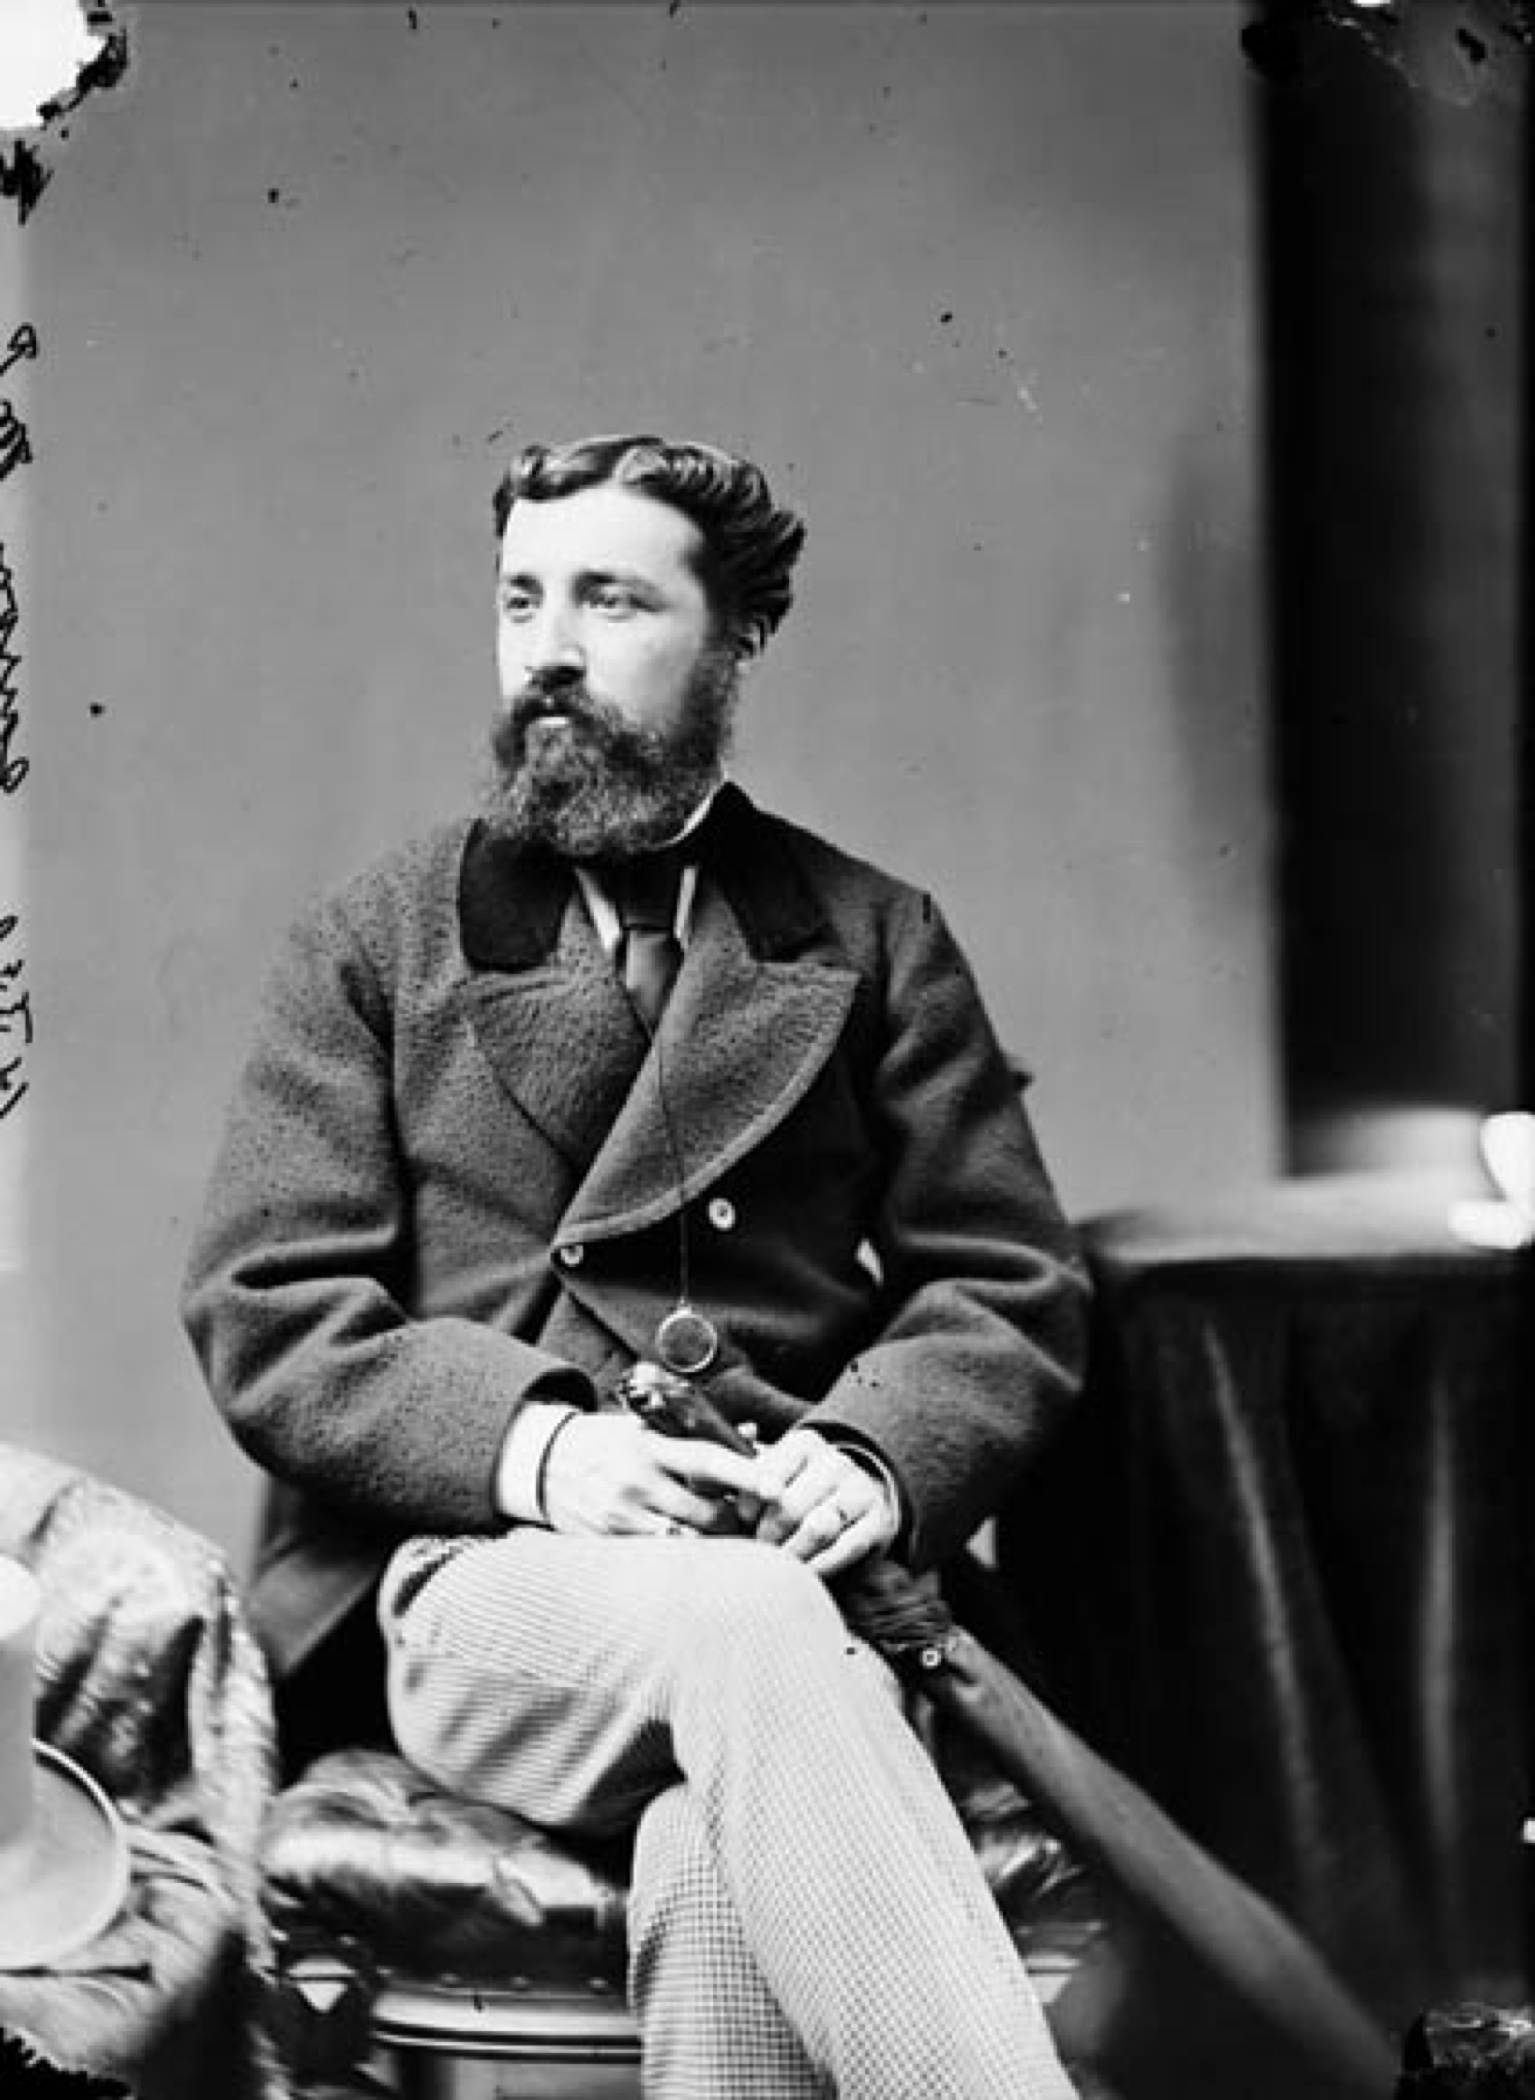 Photographie noir et blanc d'un jeune homme barbu (Sir Adolphe Caron) assis, tenant un parapluie fermé près de ses jambes croisées, son regard tourné vers la gauche. Il est vêtu d’un manteau de laine à double boutonnage et d’une cravate sombre. 